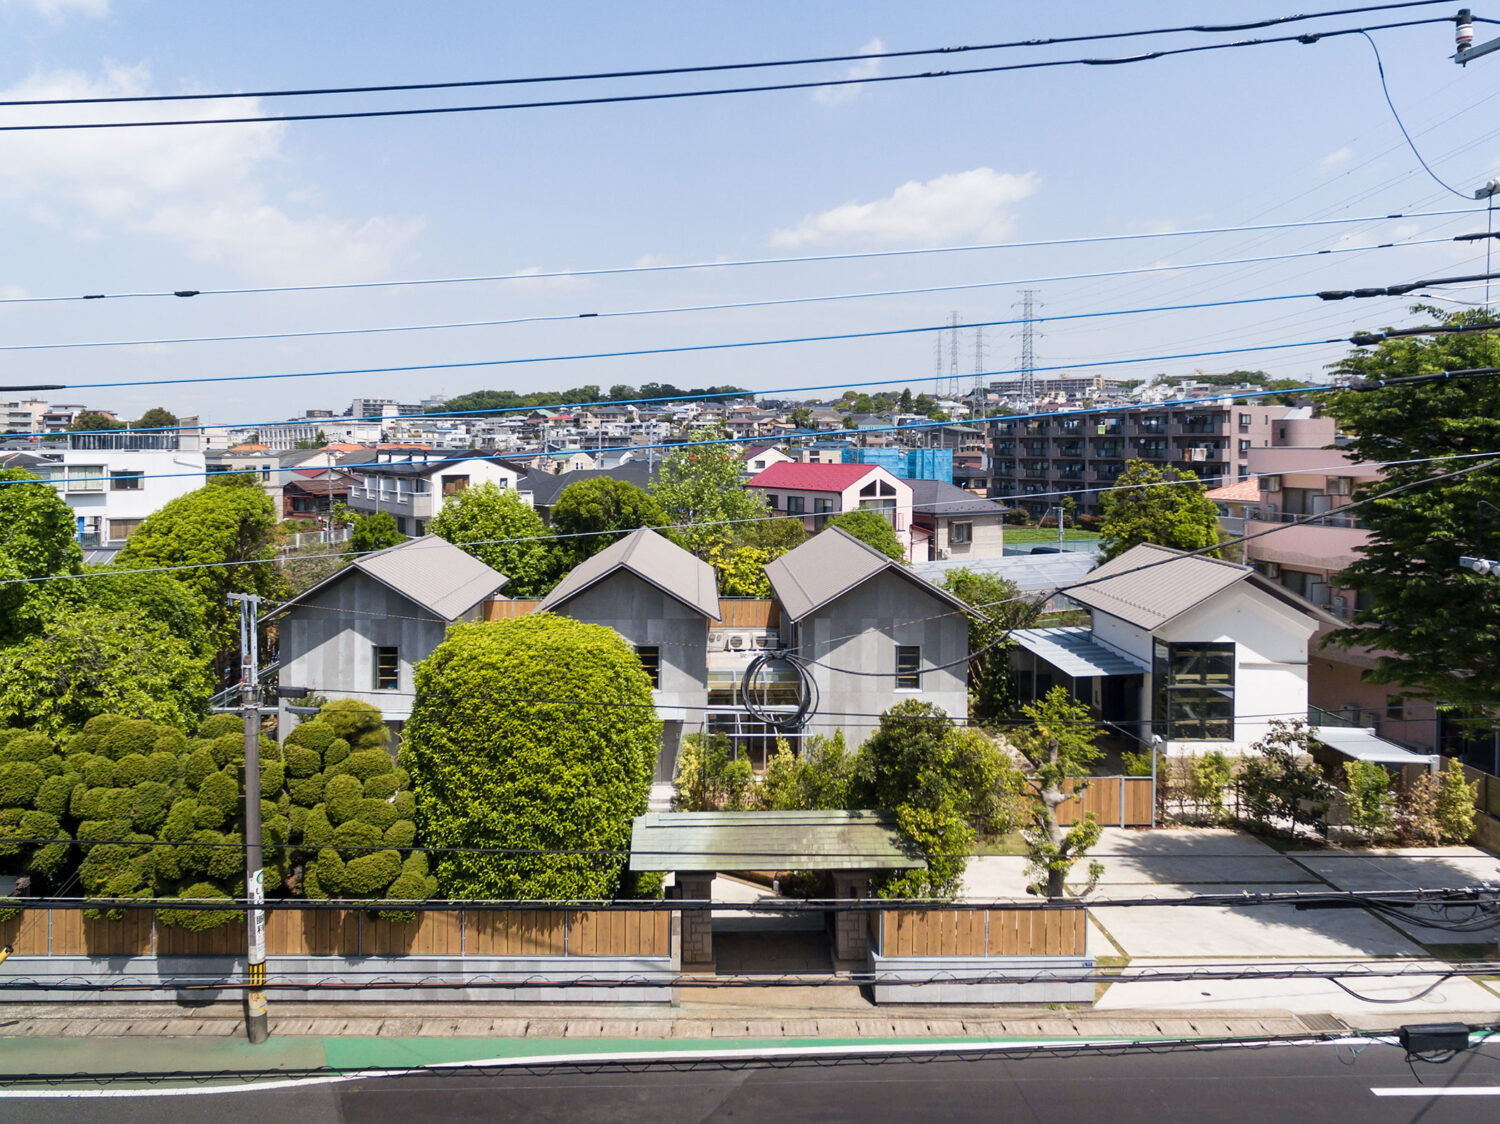 본래 농촌 마을이었던 카와사키 시의 마을을 재개발하며 '집합 주택'과 '집합 오피스'로 재-구성 됐어요. 그리고 그건, 농촌 마을이 갖고있던 100년 넘은 나무와 정원, 일본 전통 가옥의 양식을 지키는 방식이었답니다. 